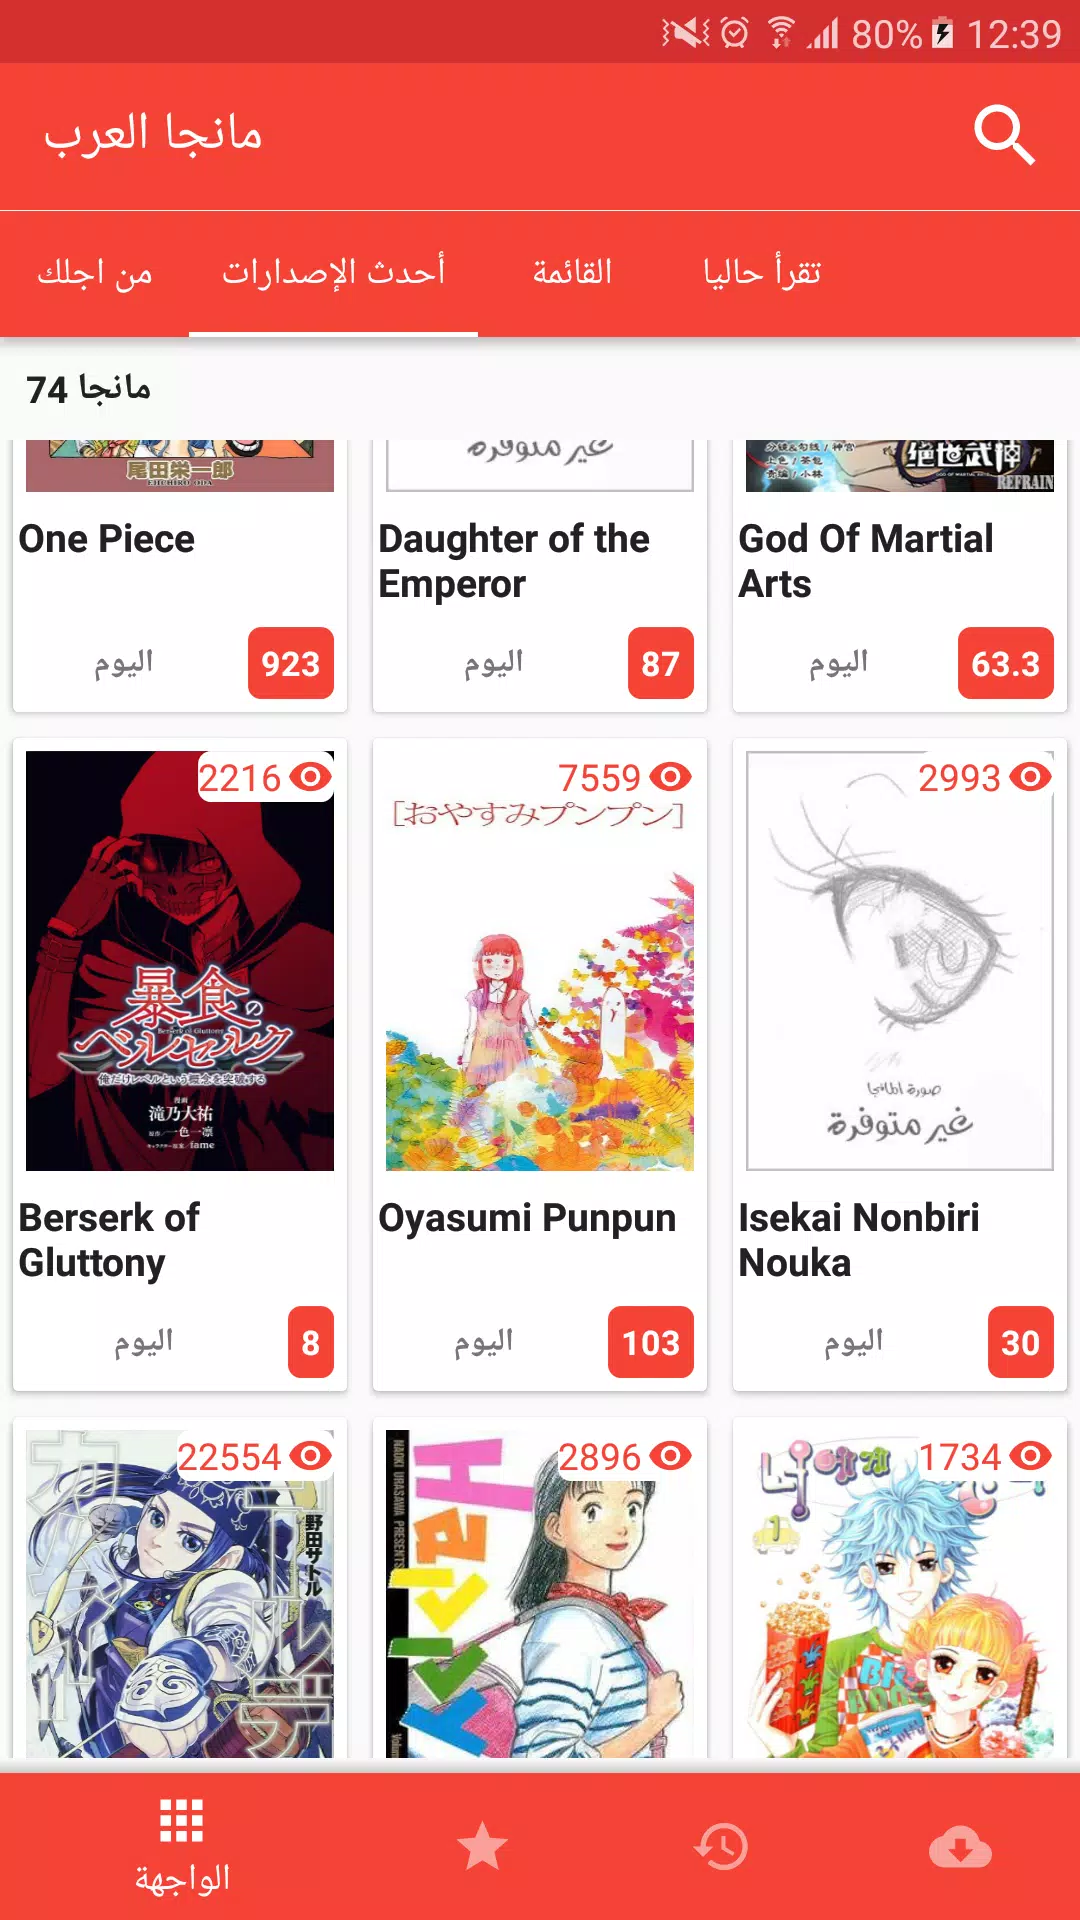 يصلح جوهرة الحزب الجمهوري  Manga Al-Arab - مانجا العرب für Android - APK herunterladen